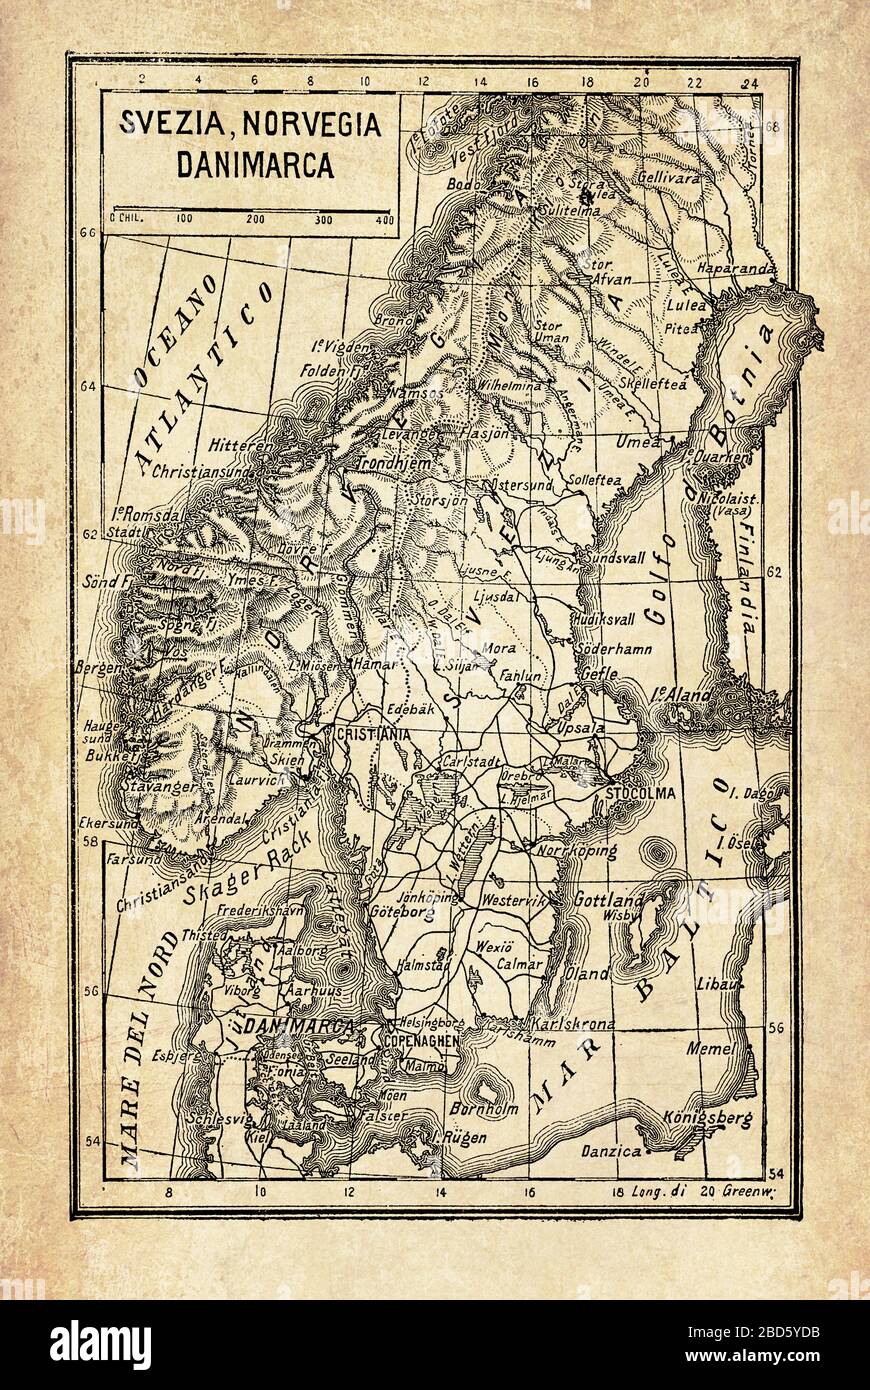 Antiguo mapa de la península escandinava con los países nórdicos Noruega y Suecia rodeados por archipiélagos insulares, por los mares Norte y Báltico y el océano Atlántico Foto de stock